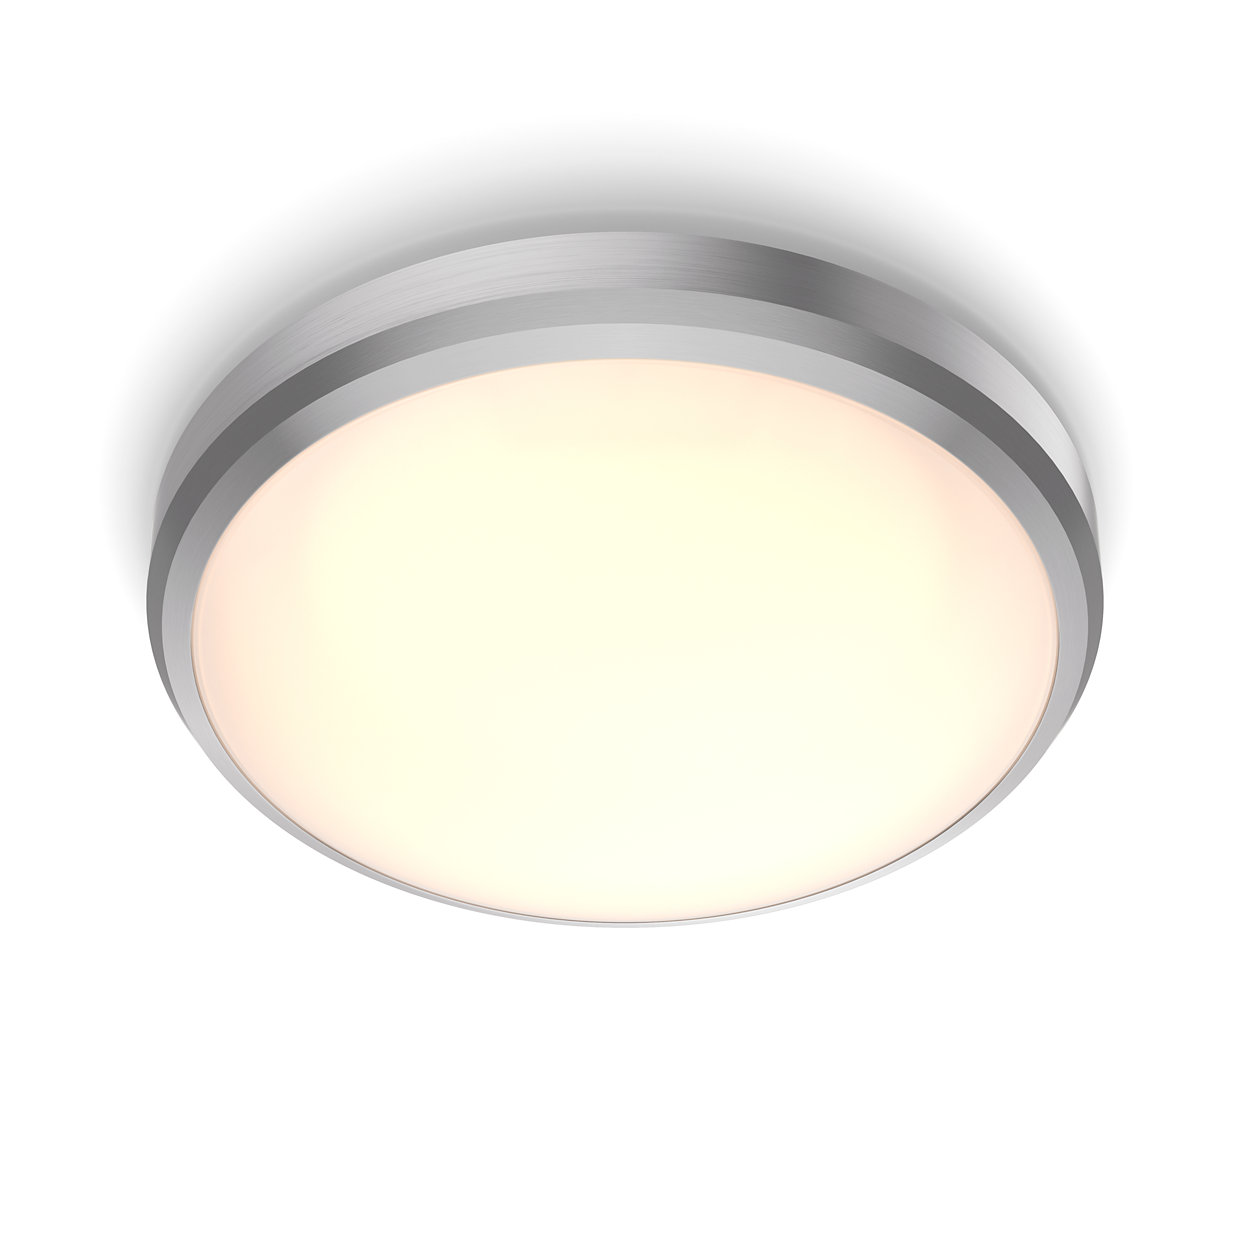 Un éclairage LED confortable pour vos yeux